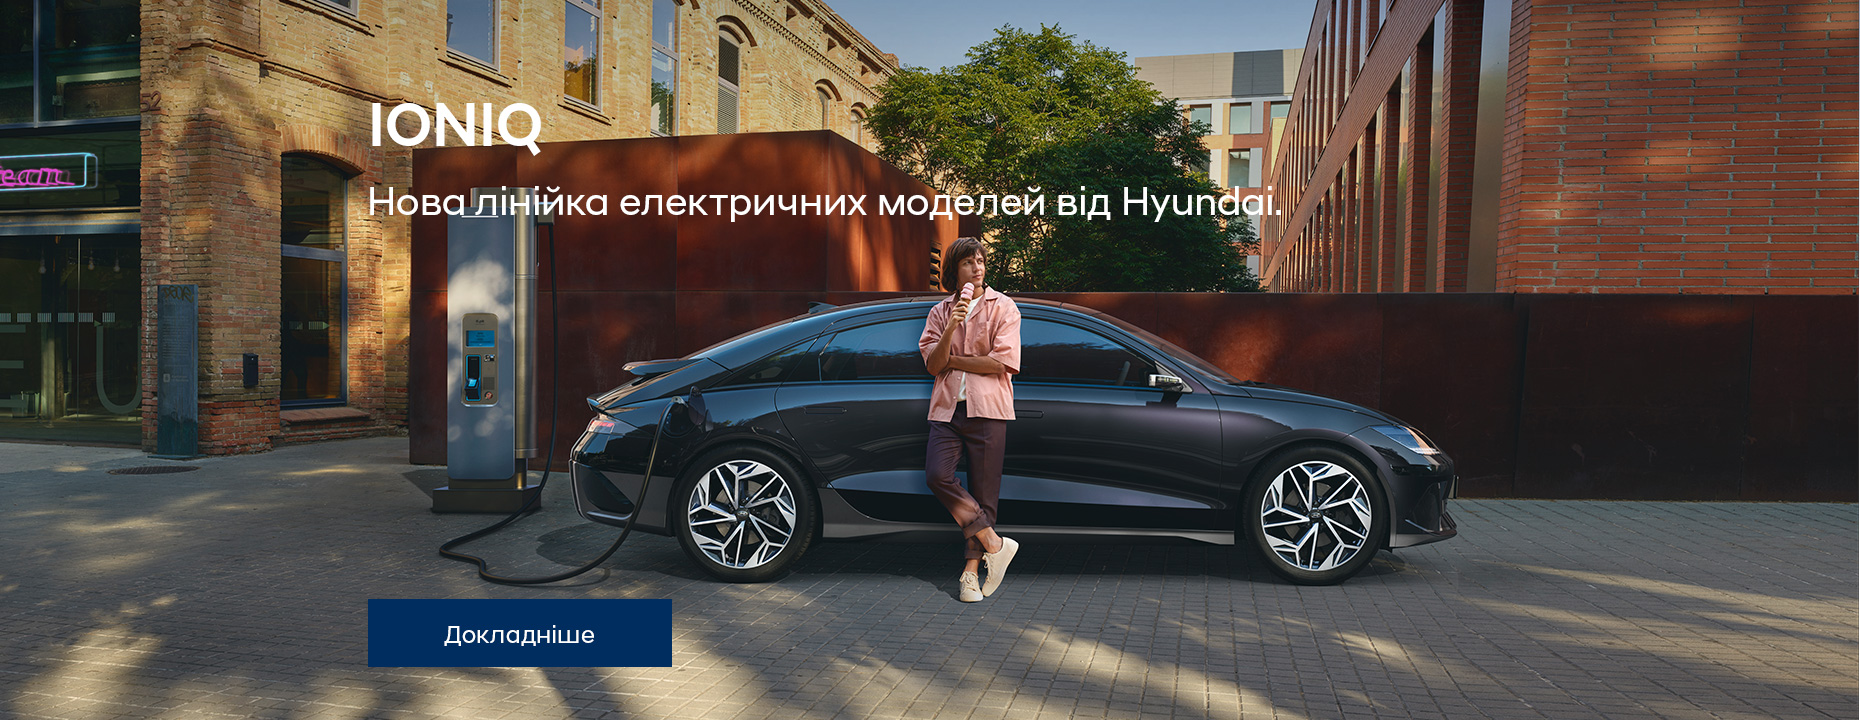 Автомобілі Hyundai м. Полтава | Купити новий Хюндай | Хюндай Центр Полтава - фото 30